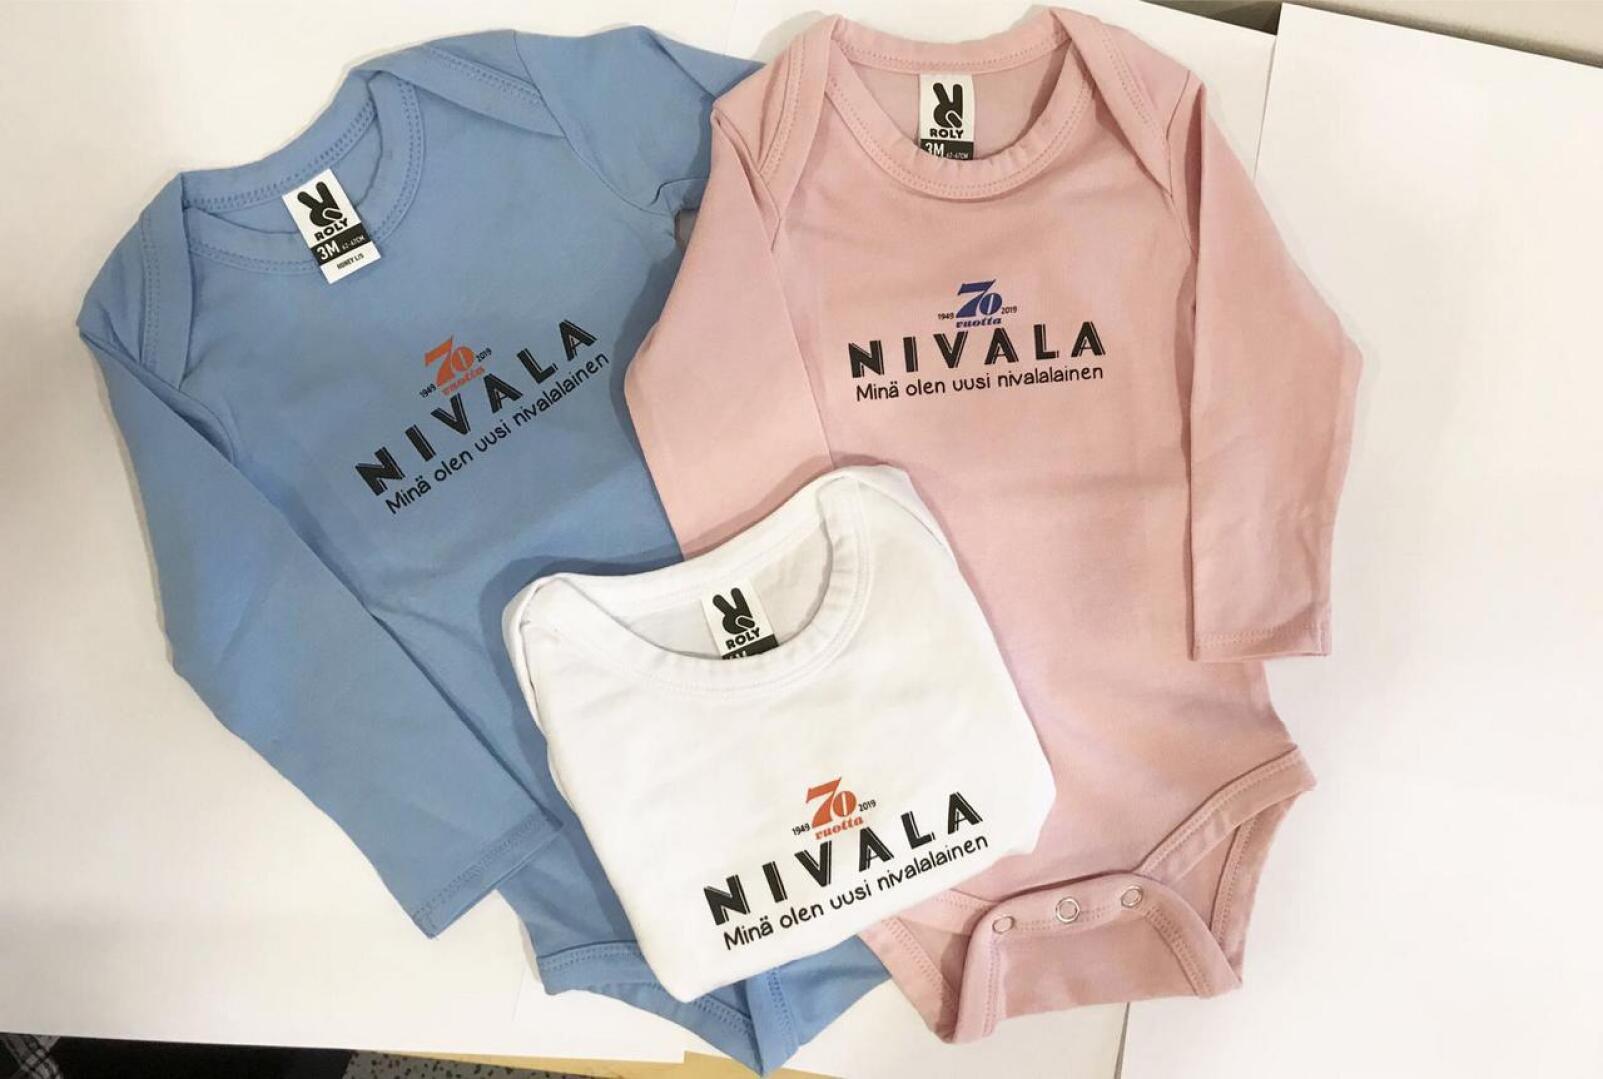 Nivala-lehden bodya on tarjolla juhlavuoden vauvoille kolmessa eri värissä.